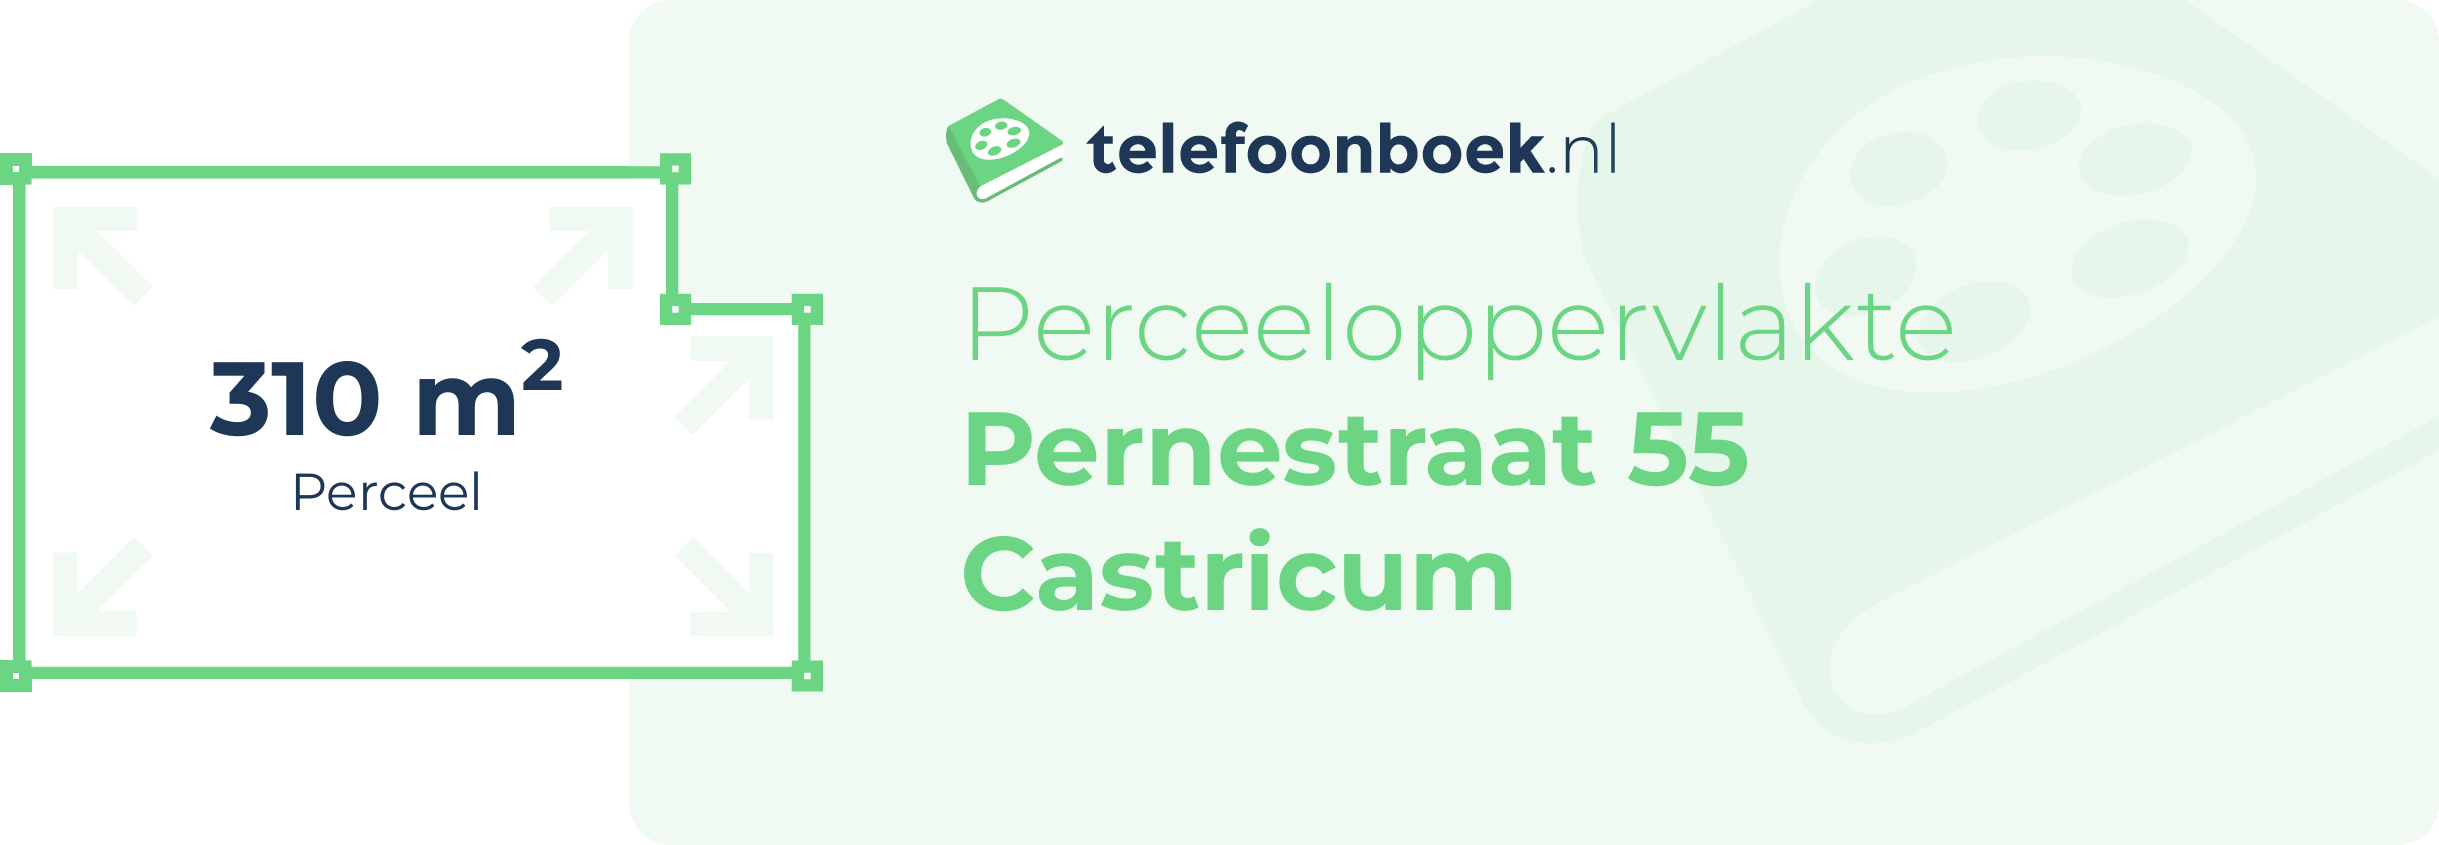 Perceeloppervlakte Pernestraat 55 Castricum